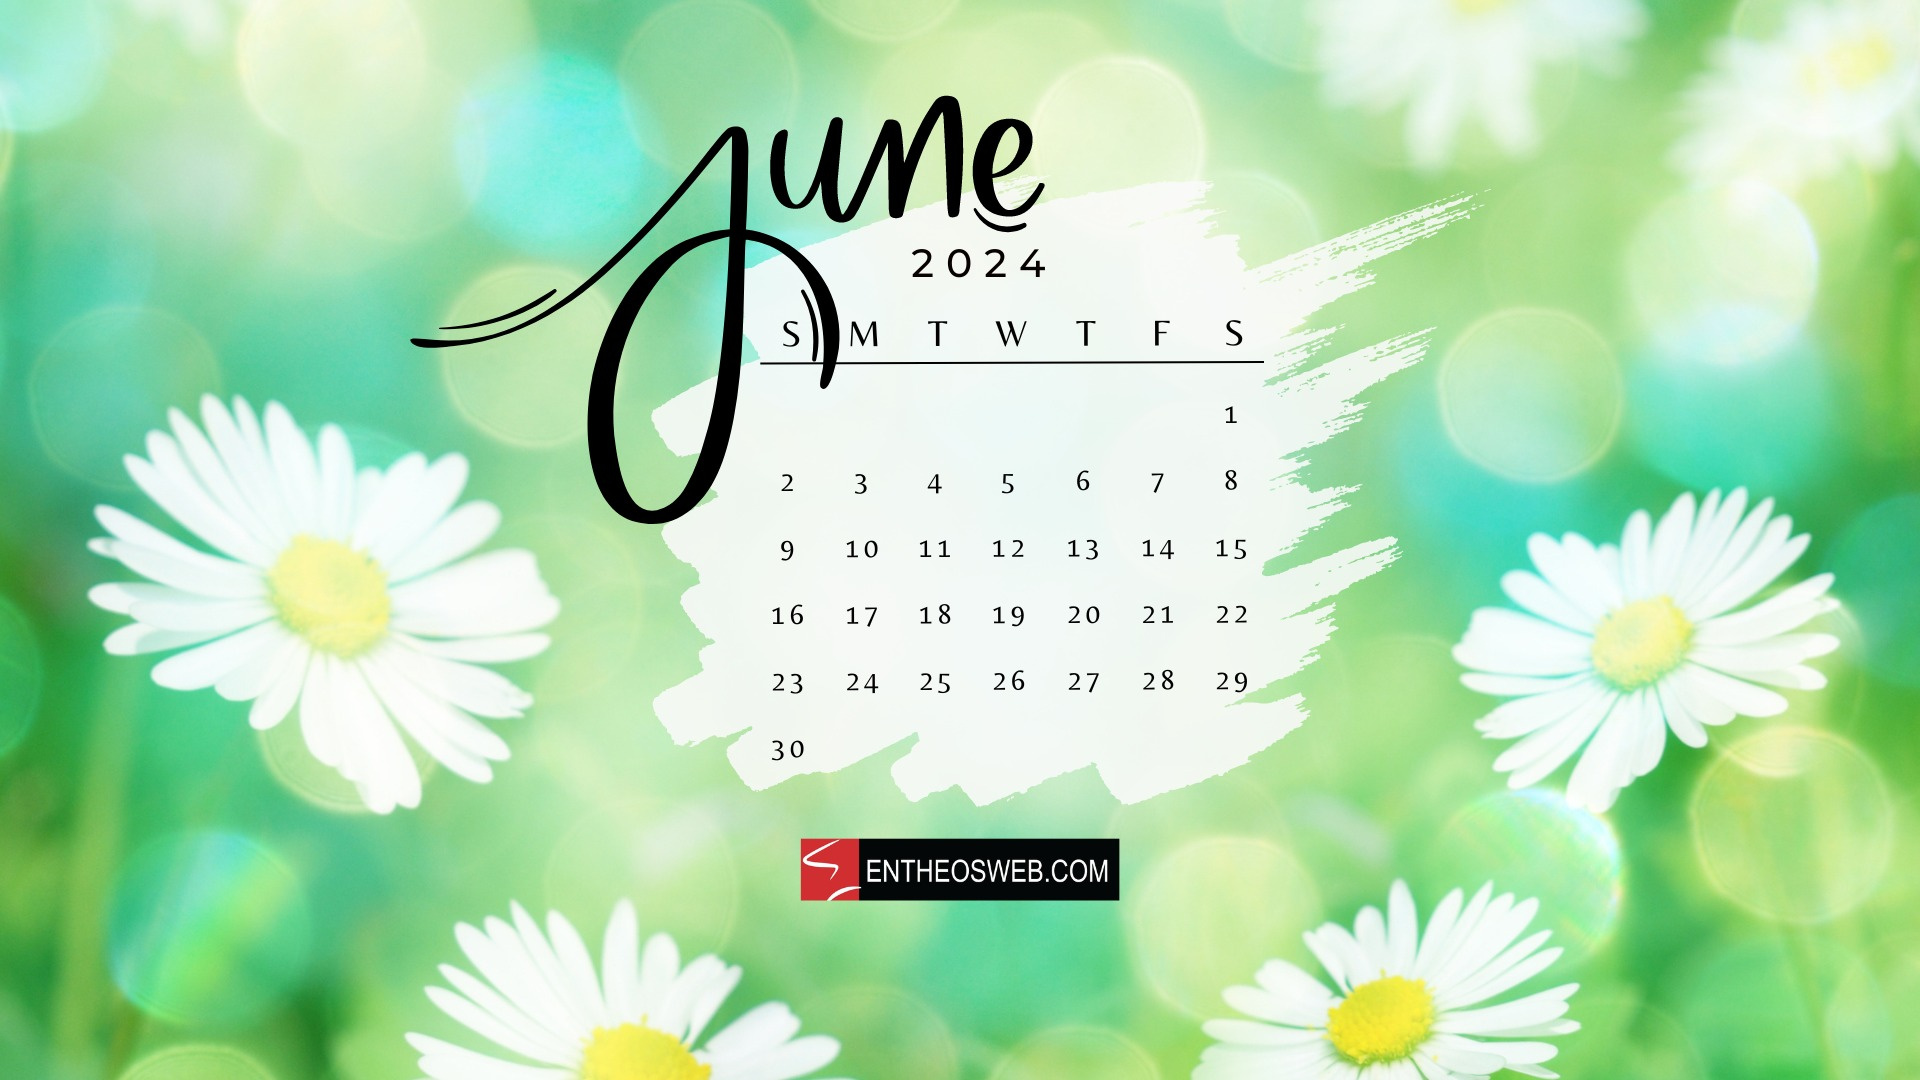 June 2024 Desktop Wallpaper Calendars | Entheosweb throughout June 2024 Calendar Desktop Wallpaper